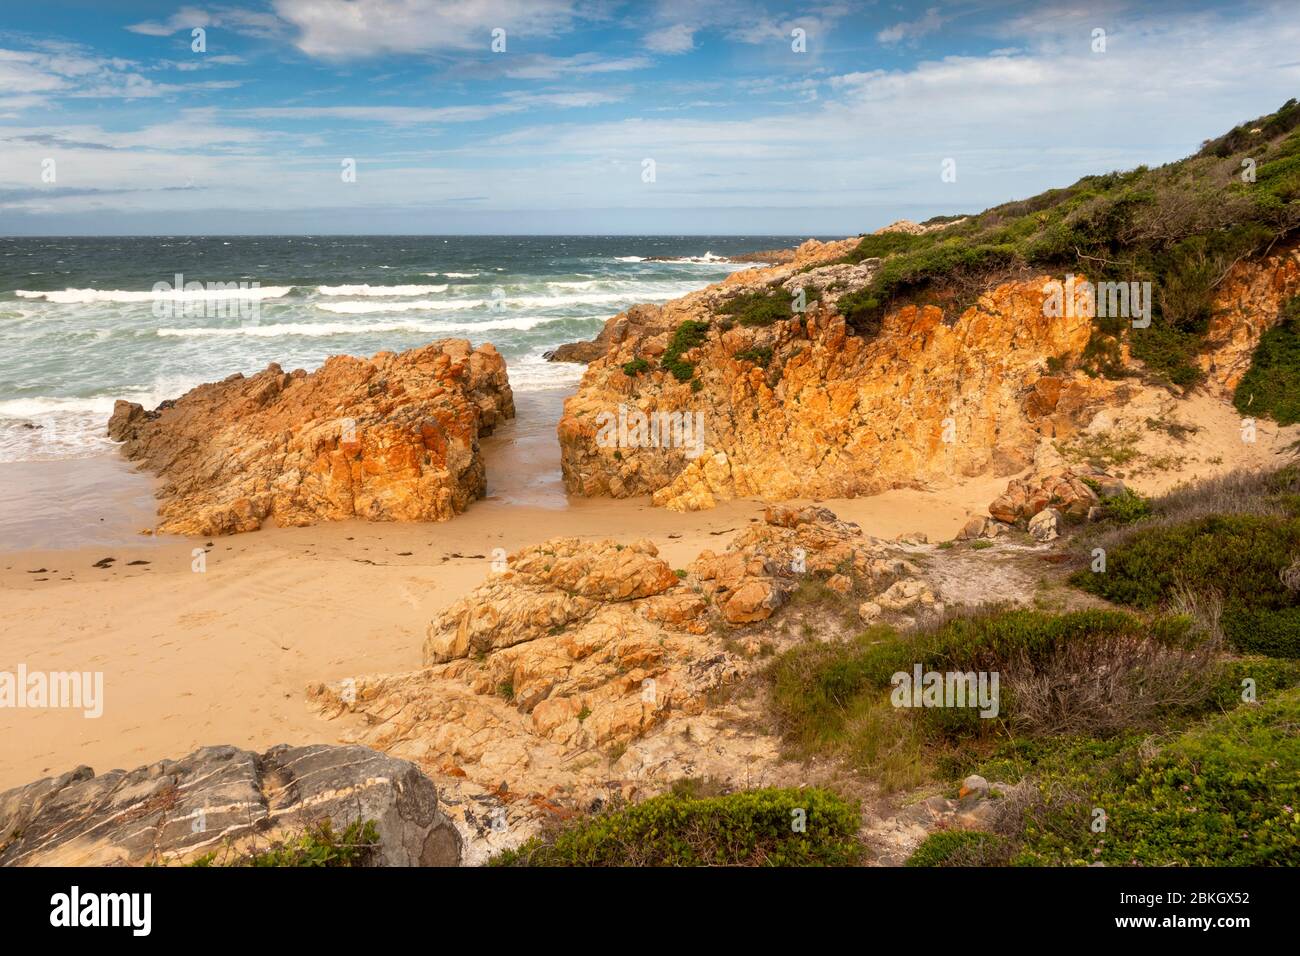 Südafrika, Western Cape, Plettenberg Bay, Lookout Beach, felsige Landzunge und abgeschiedene Bucht unterhalb des Lookout Deck Restaurants Stockfoto